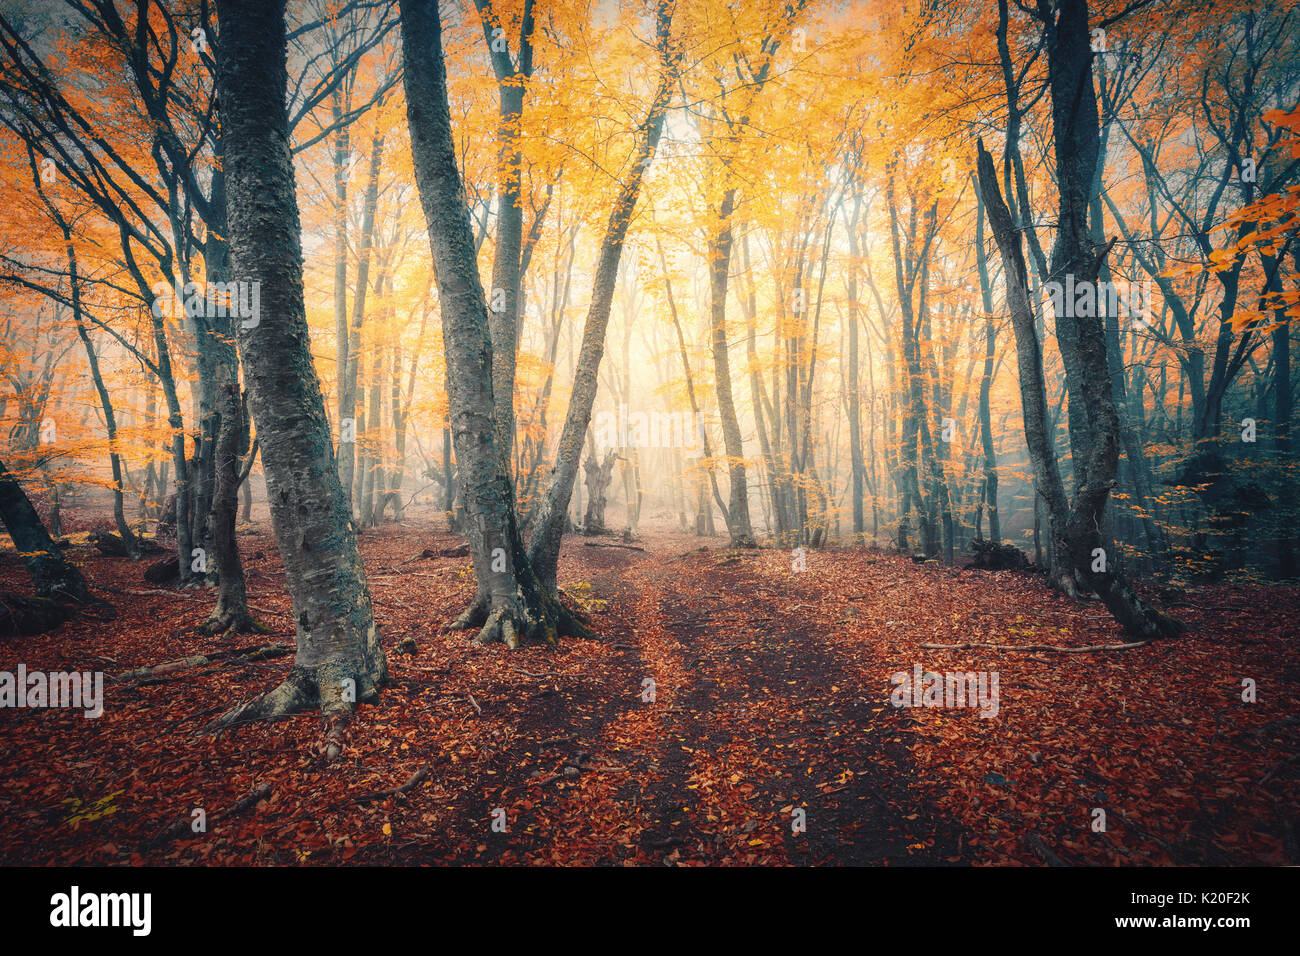 Herbst Wald mit Trail im Nebel. Herbst Wald. Die verzauberte Herbst Wald im Nebel am Abend. Alter Baum. Landschaft mit Bäumen, bunte Orange und Rot fo Stockfoto